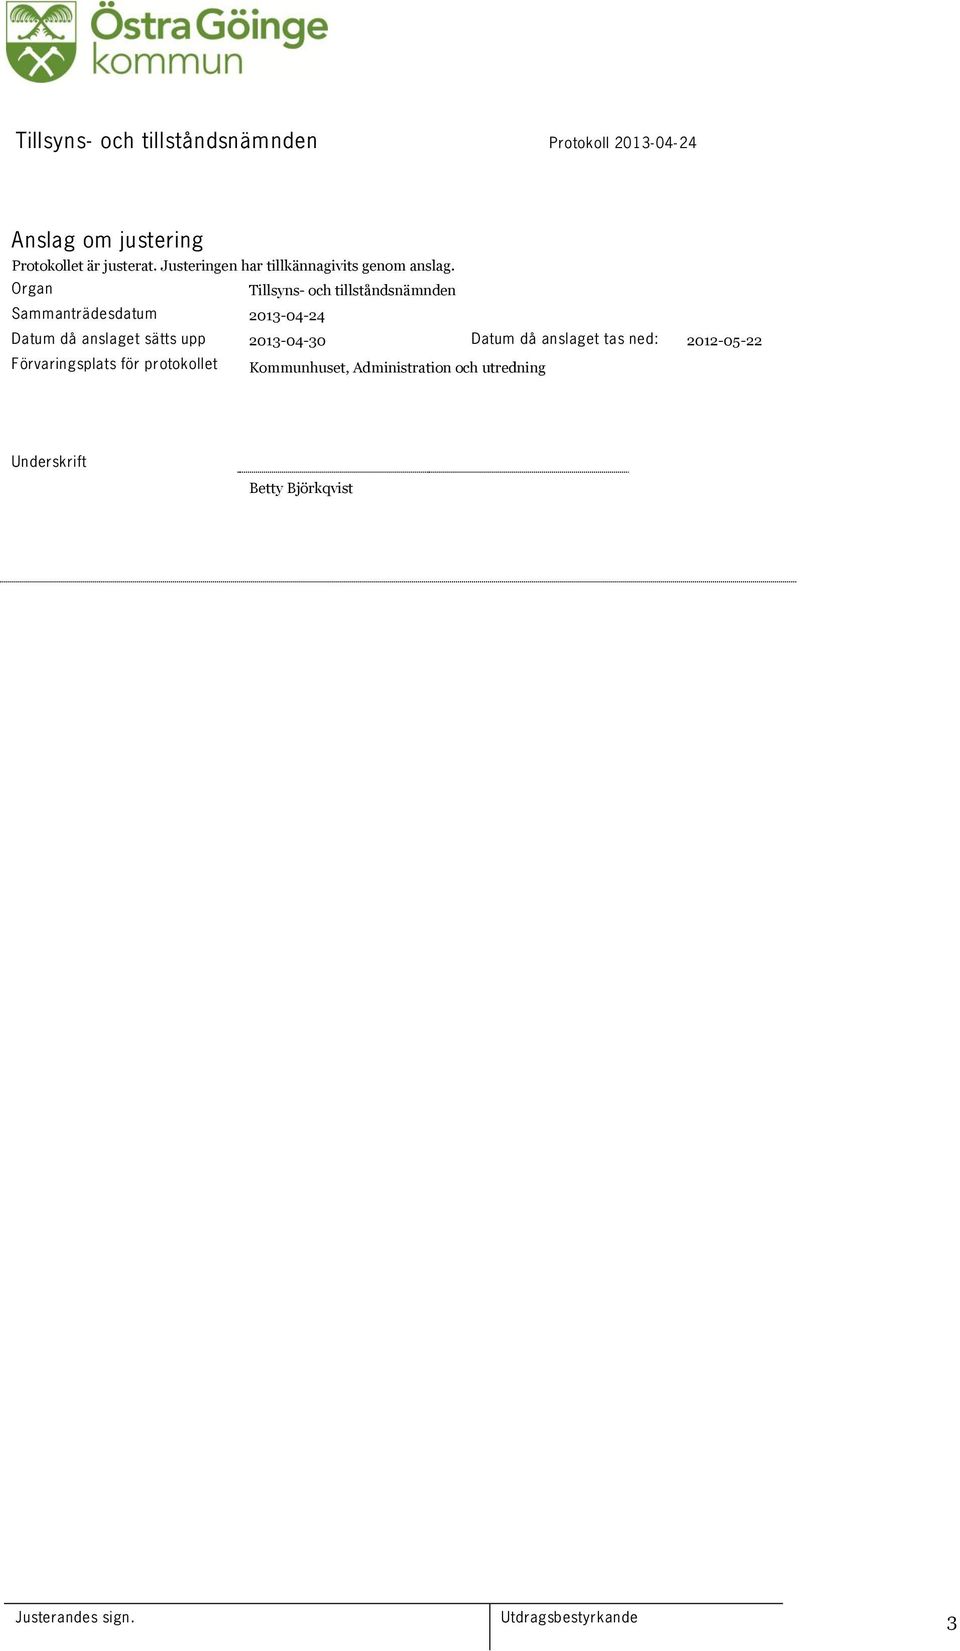 Organ Tillsyns- och tillståndsnämnden Sammanträdesdatum 2013-04-24 Datum då anslaget